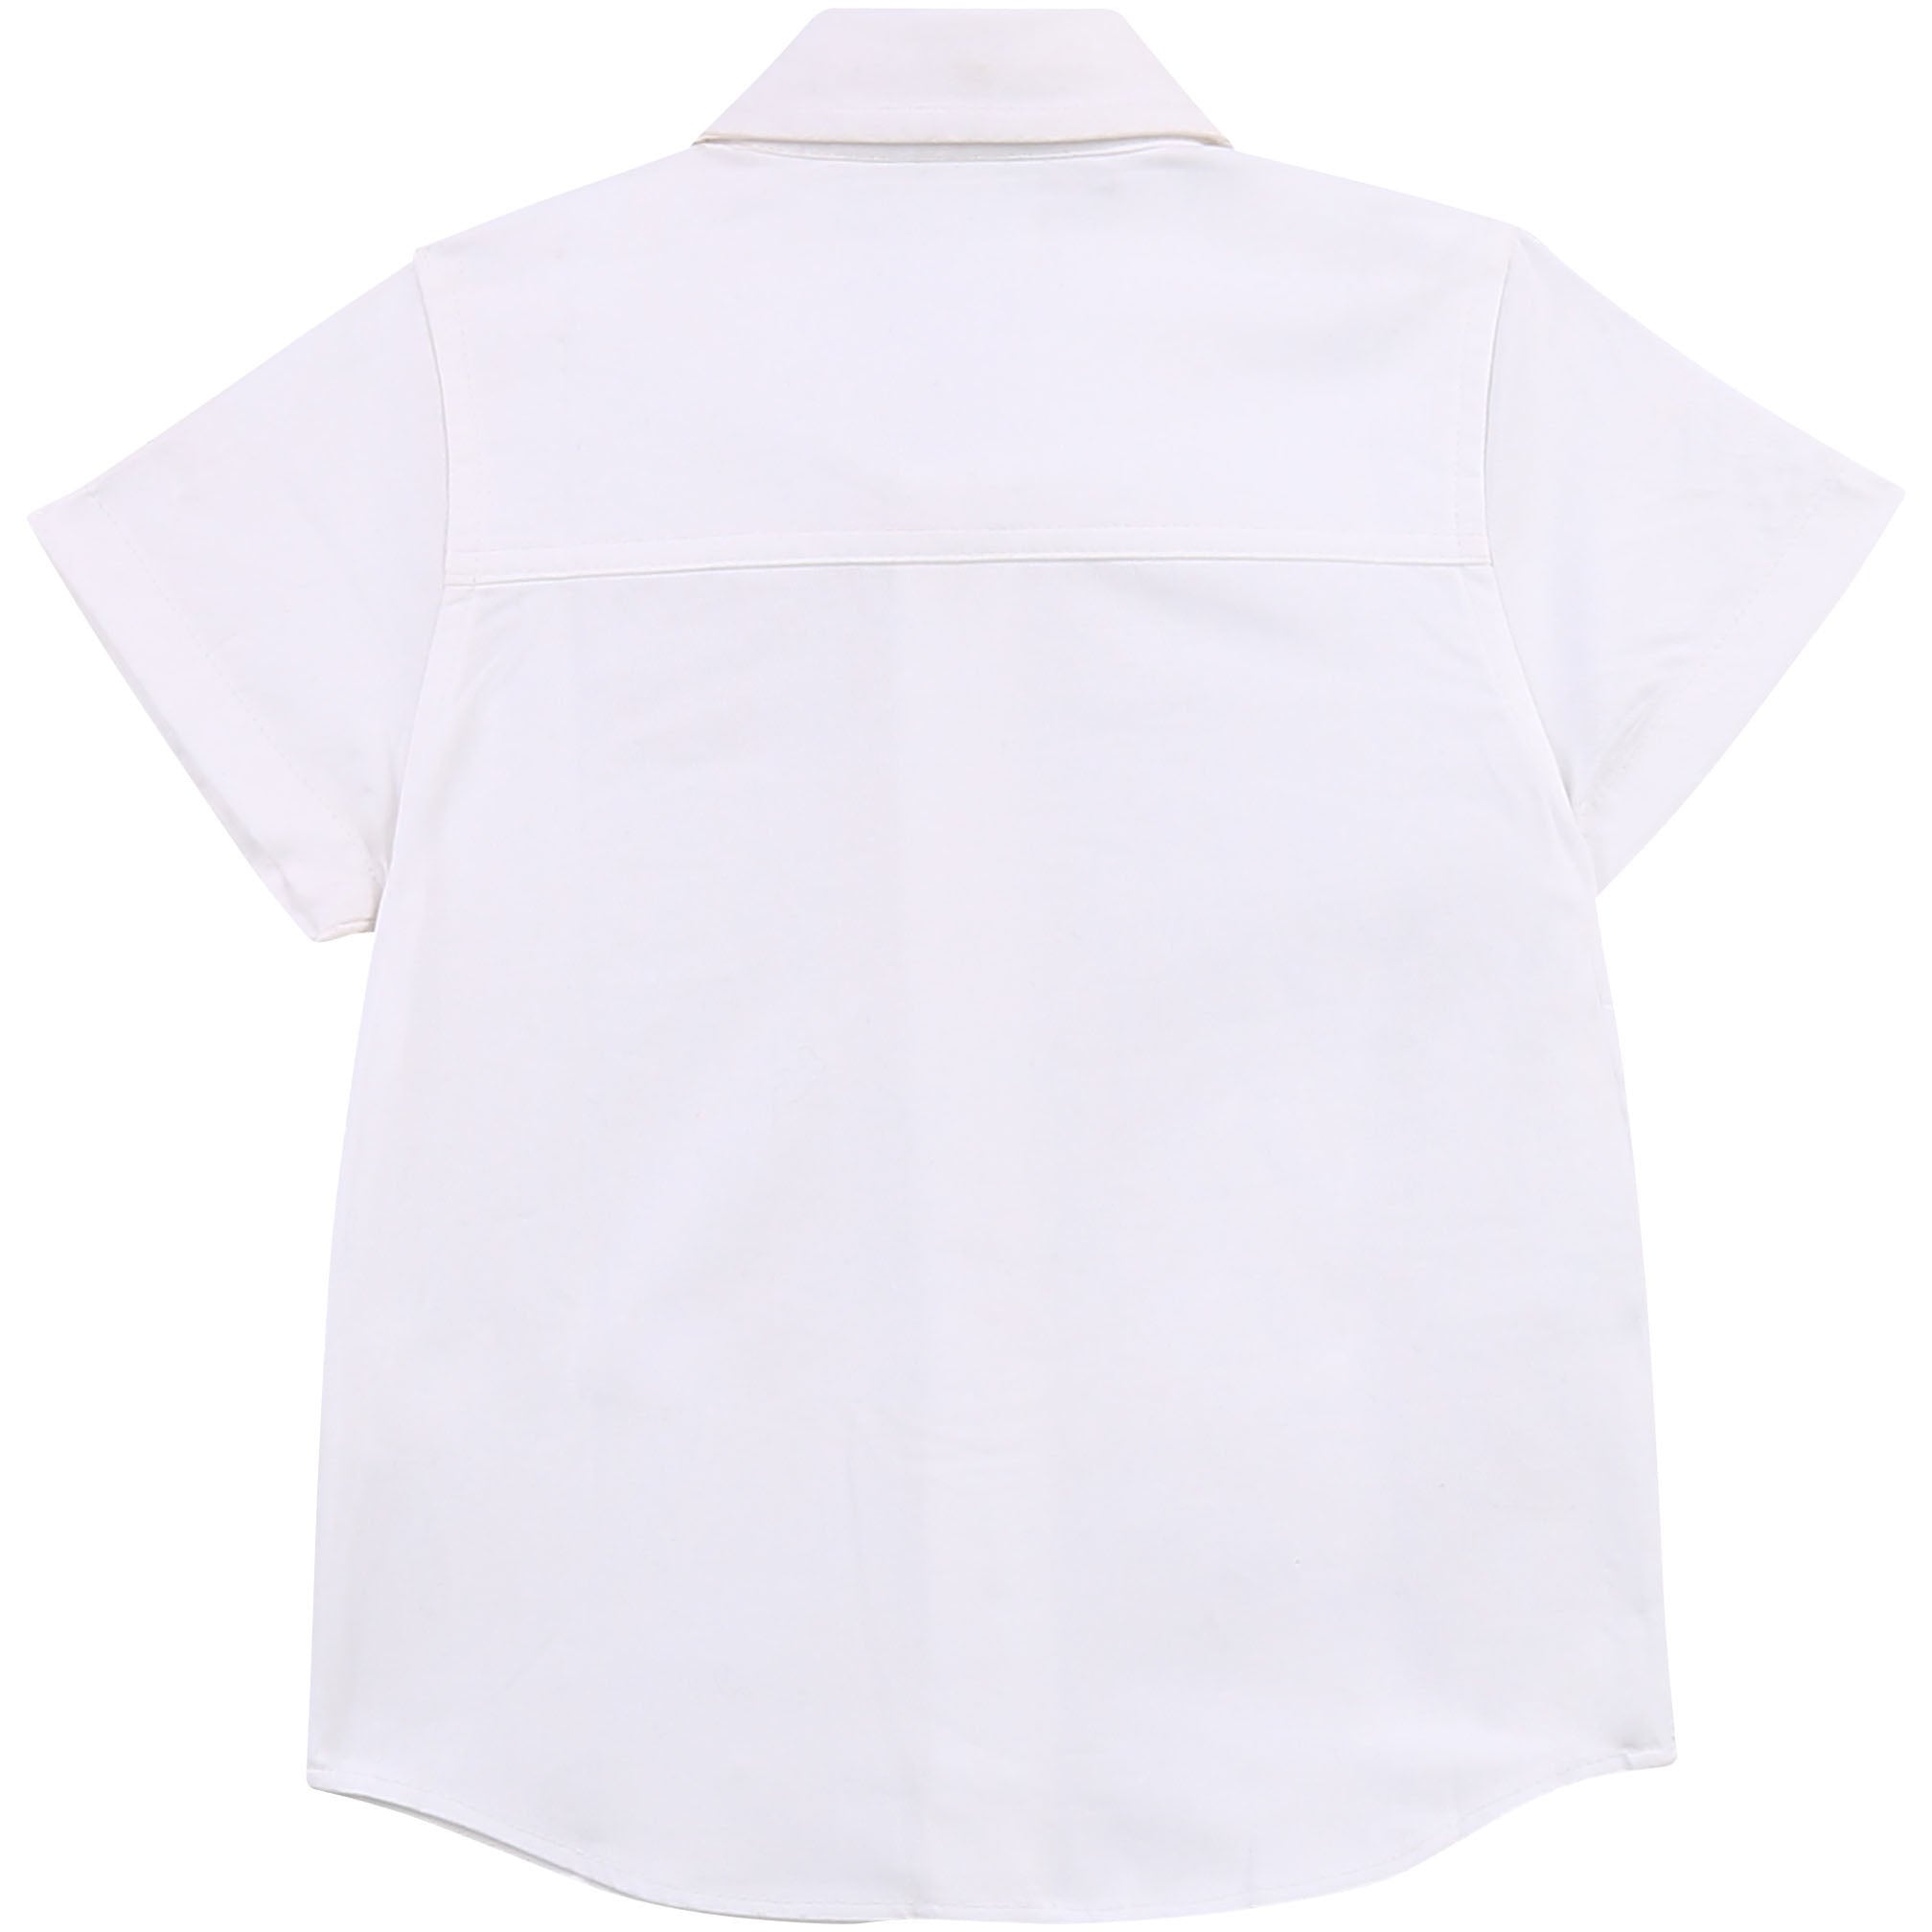 Hugo Boss Baby Boys White Dress Shirt